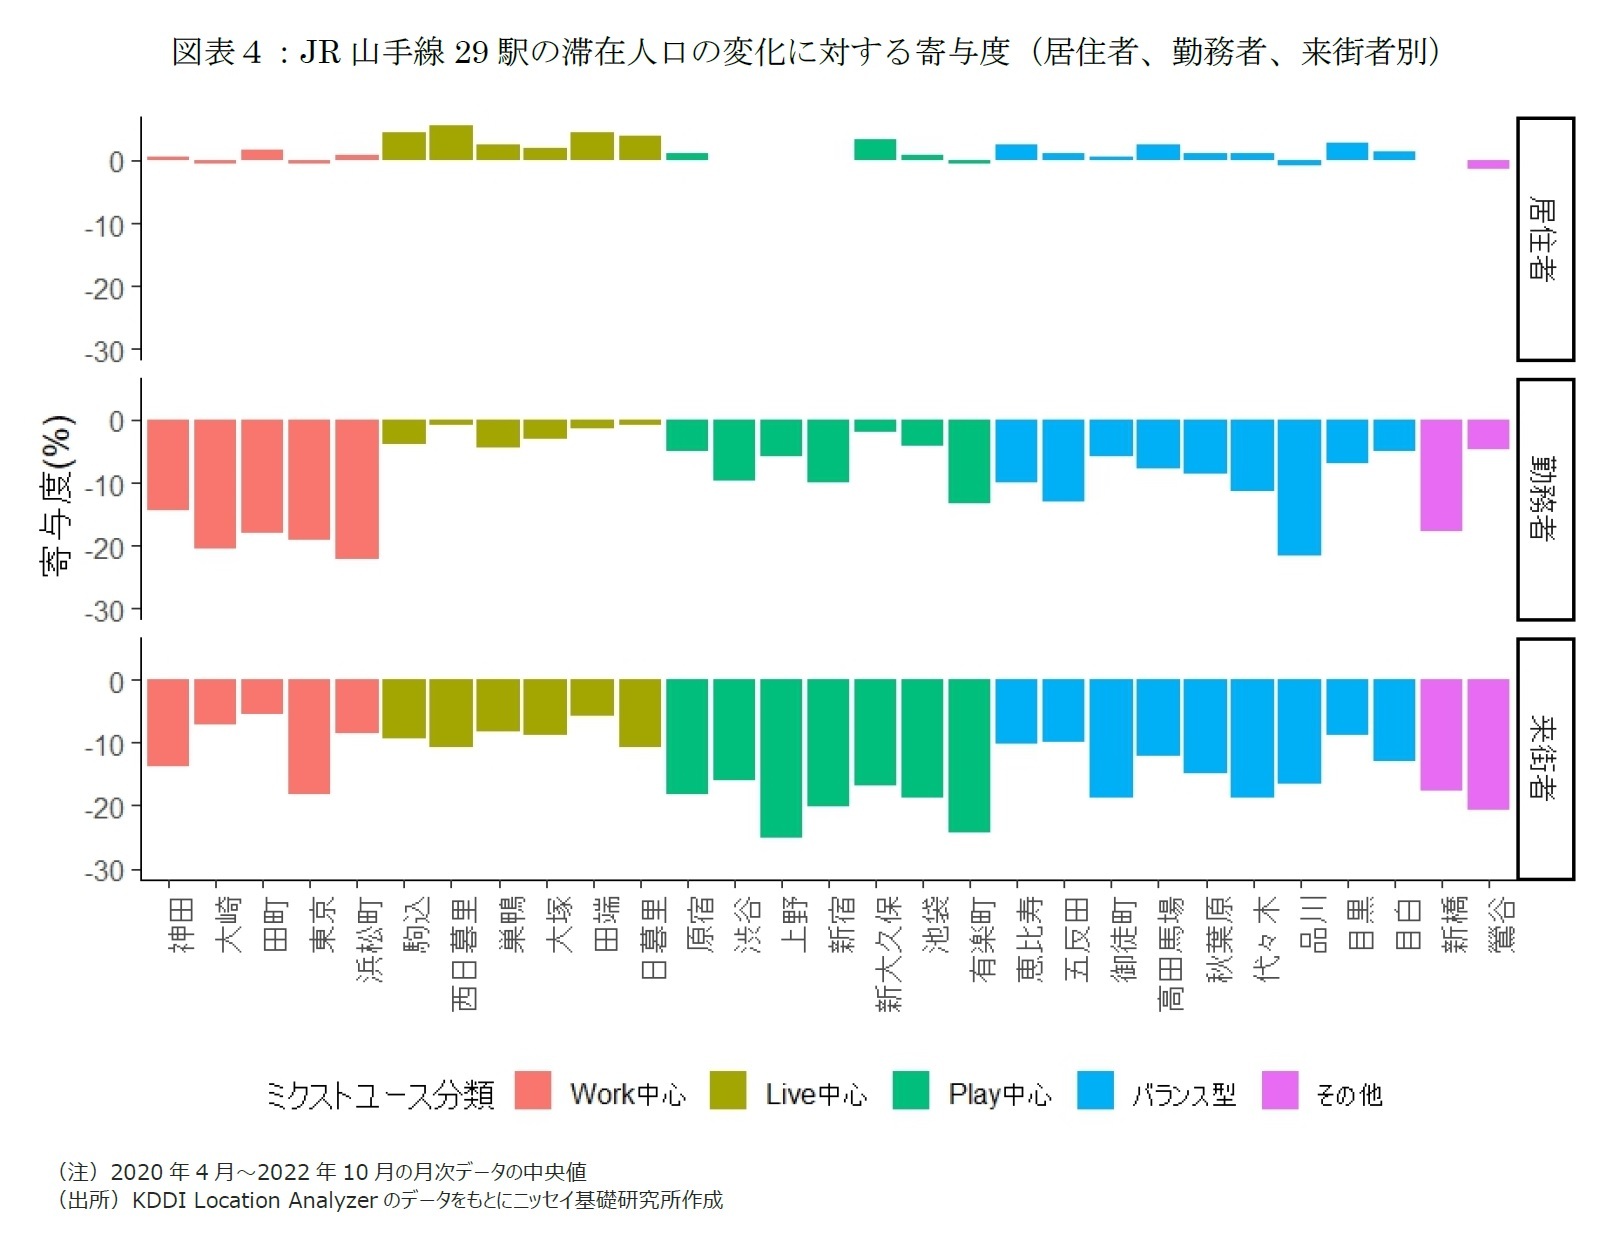 図表４：JR山手線29駅の滞在人口の変化に対する寄与度（居住者、勤務者、来街者別）